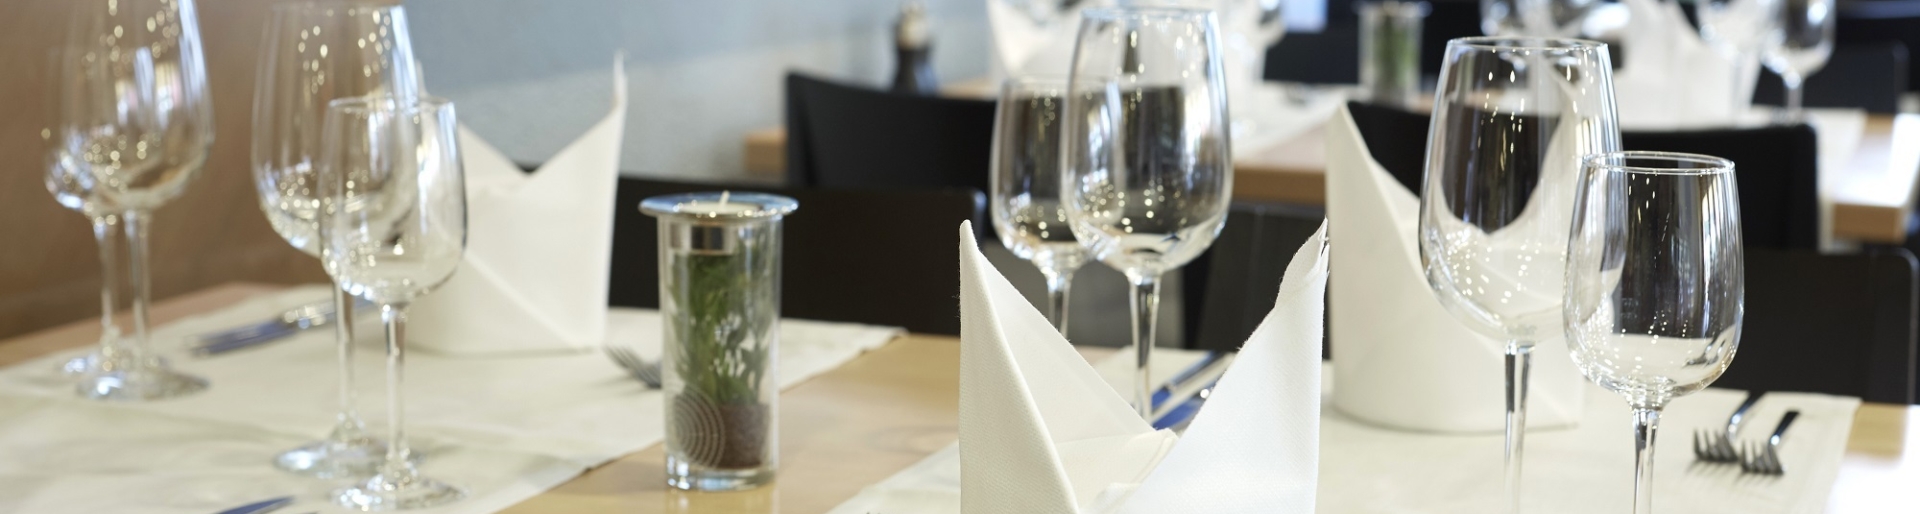 Ein edel angerichteter Tisch mit weißen Servietten und glänzenden Weingläsern.